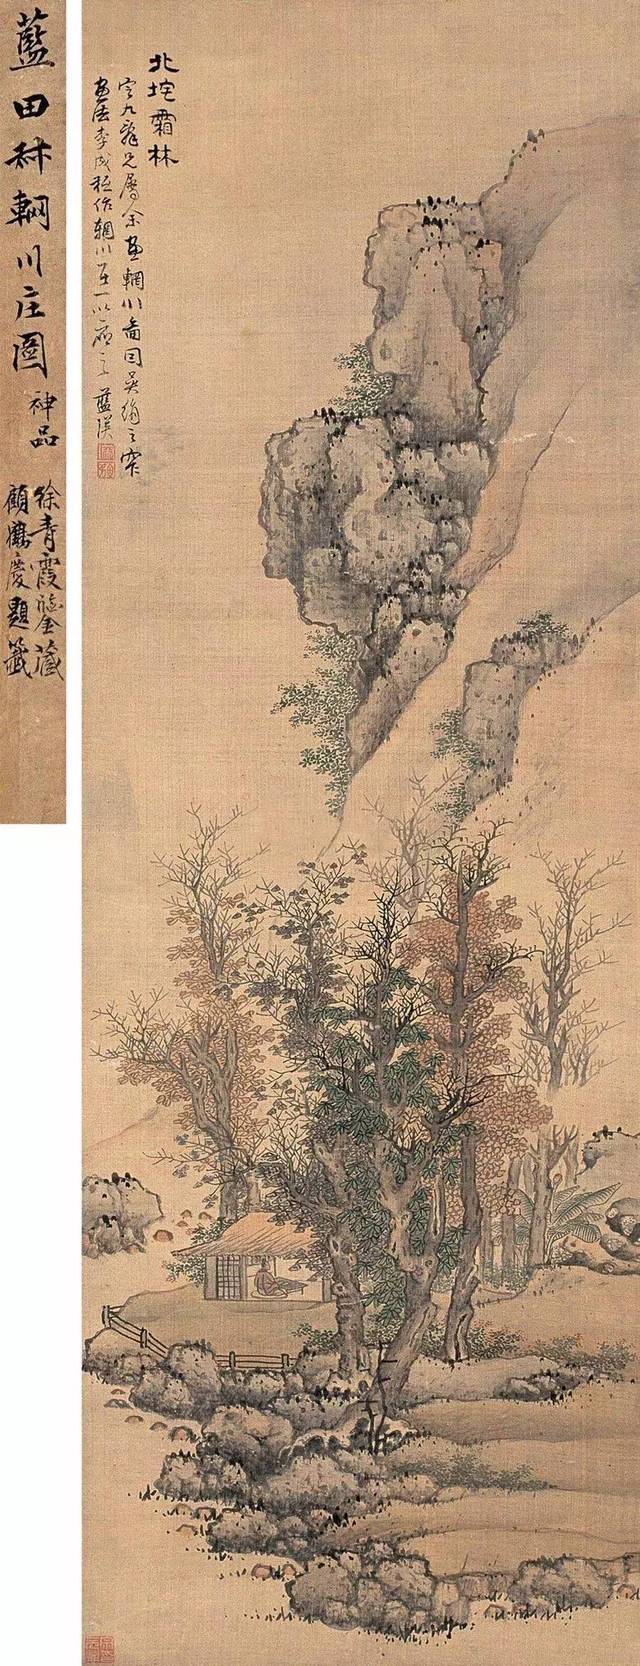 蓝瑛的山水画艺术成就,得益于他"性耽山水".